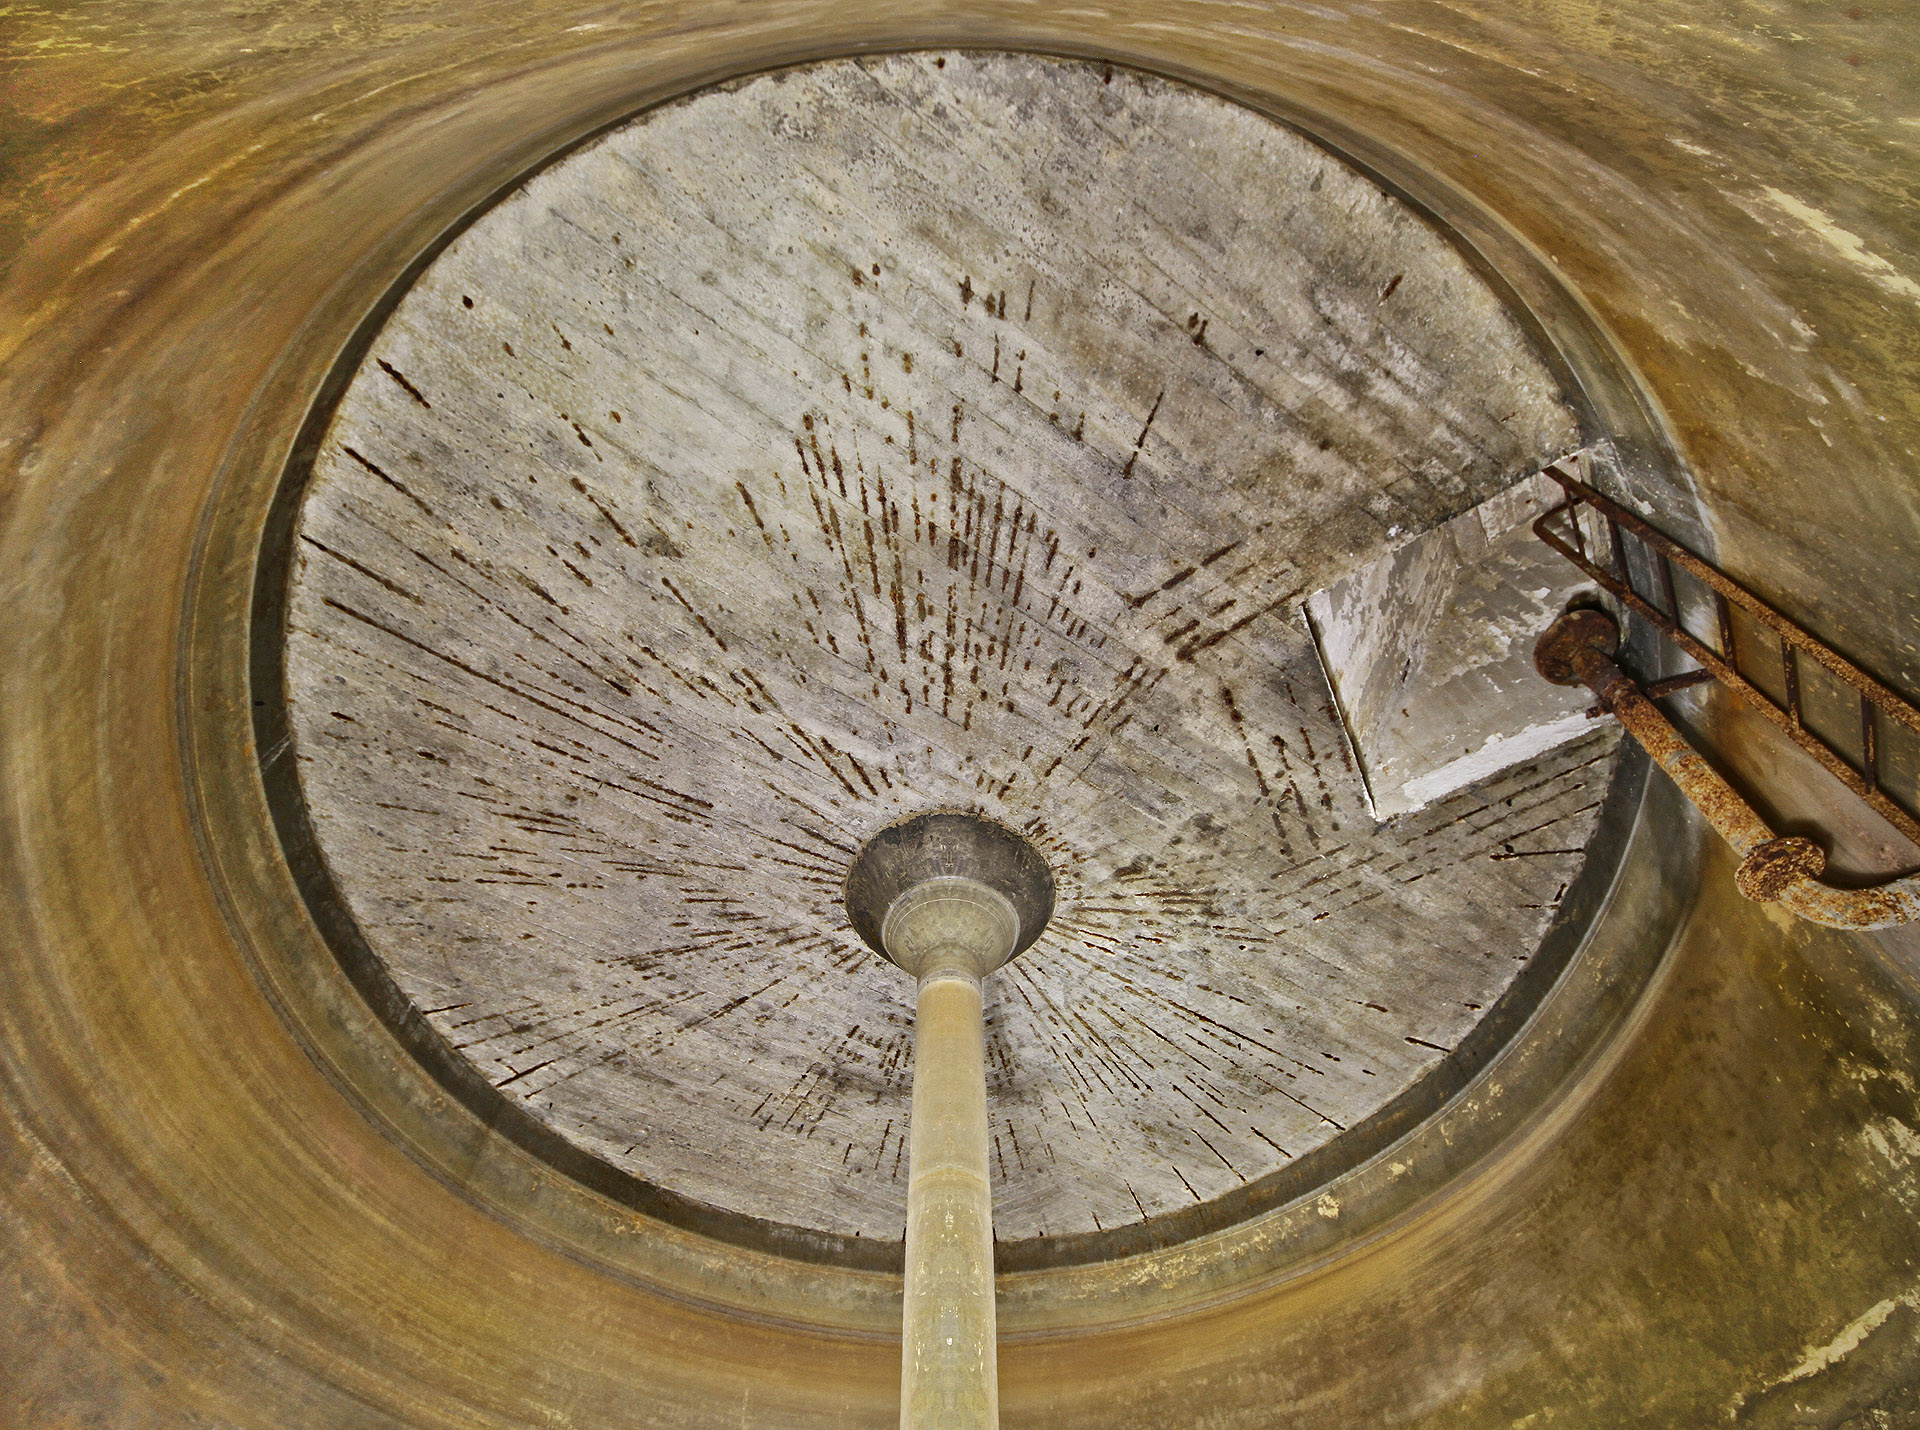 Širokoúhlý objektiv umožňuje zabrat z podlahy celý kruhový strop nádrže. Samozřejmě za cenu mírného zkreslení světa okolo…